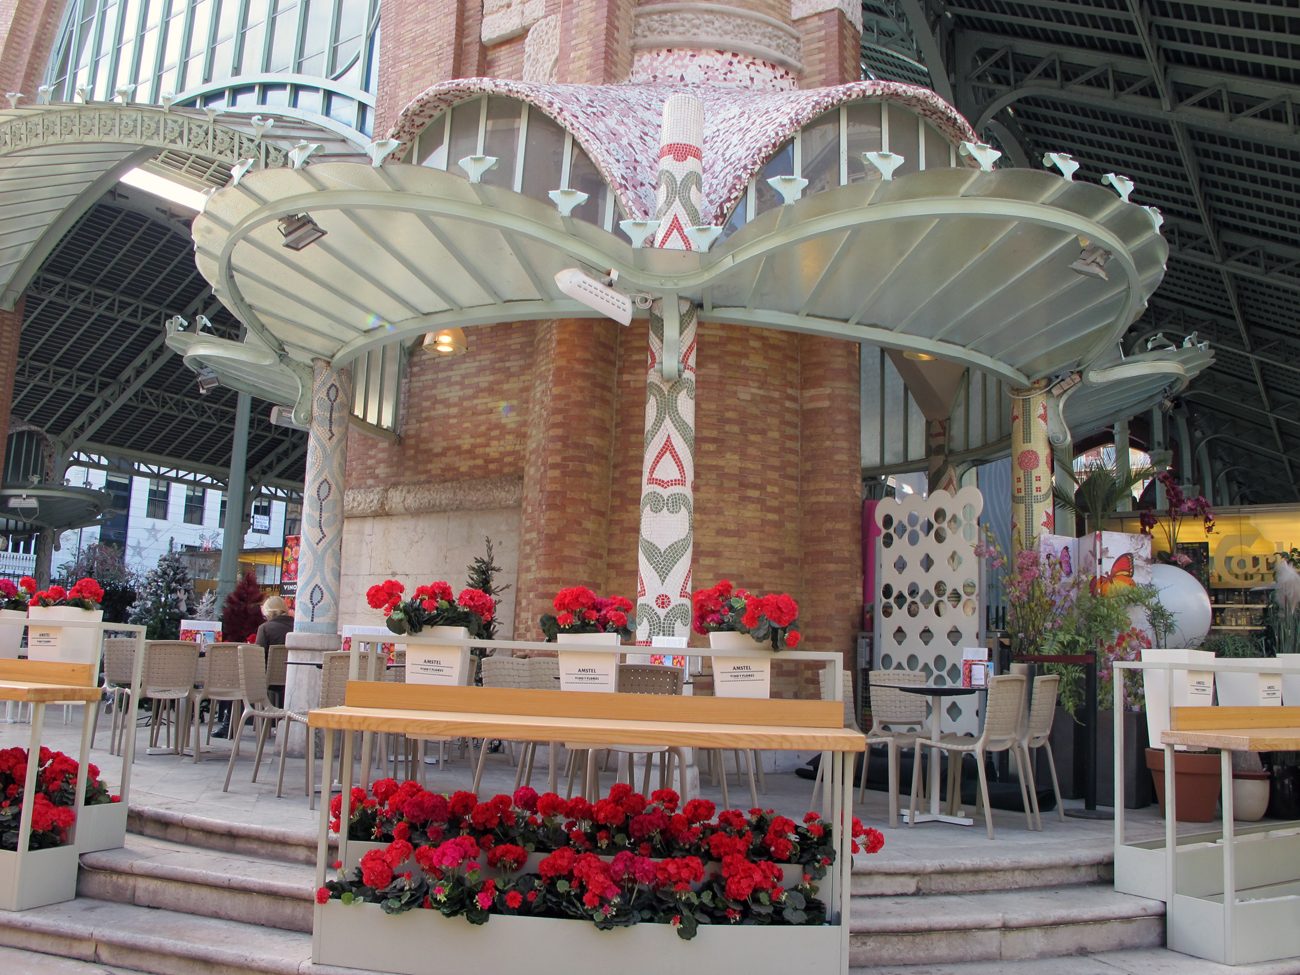 El restaurante Vinos y Flores se encuentra ubicado en el Mercado de Colón de Valencia